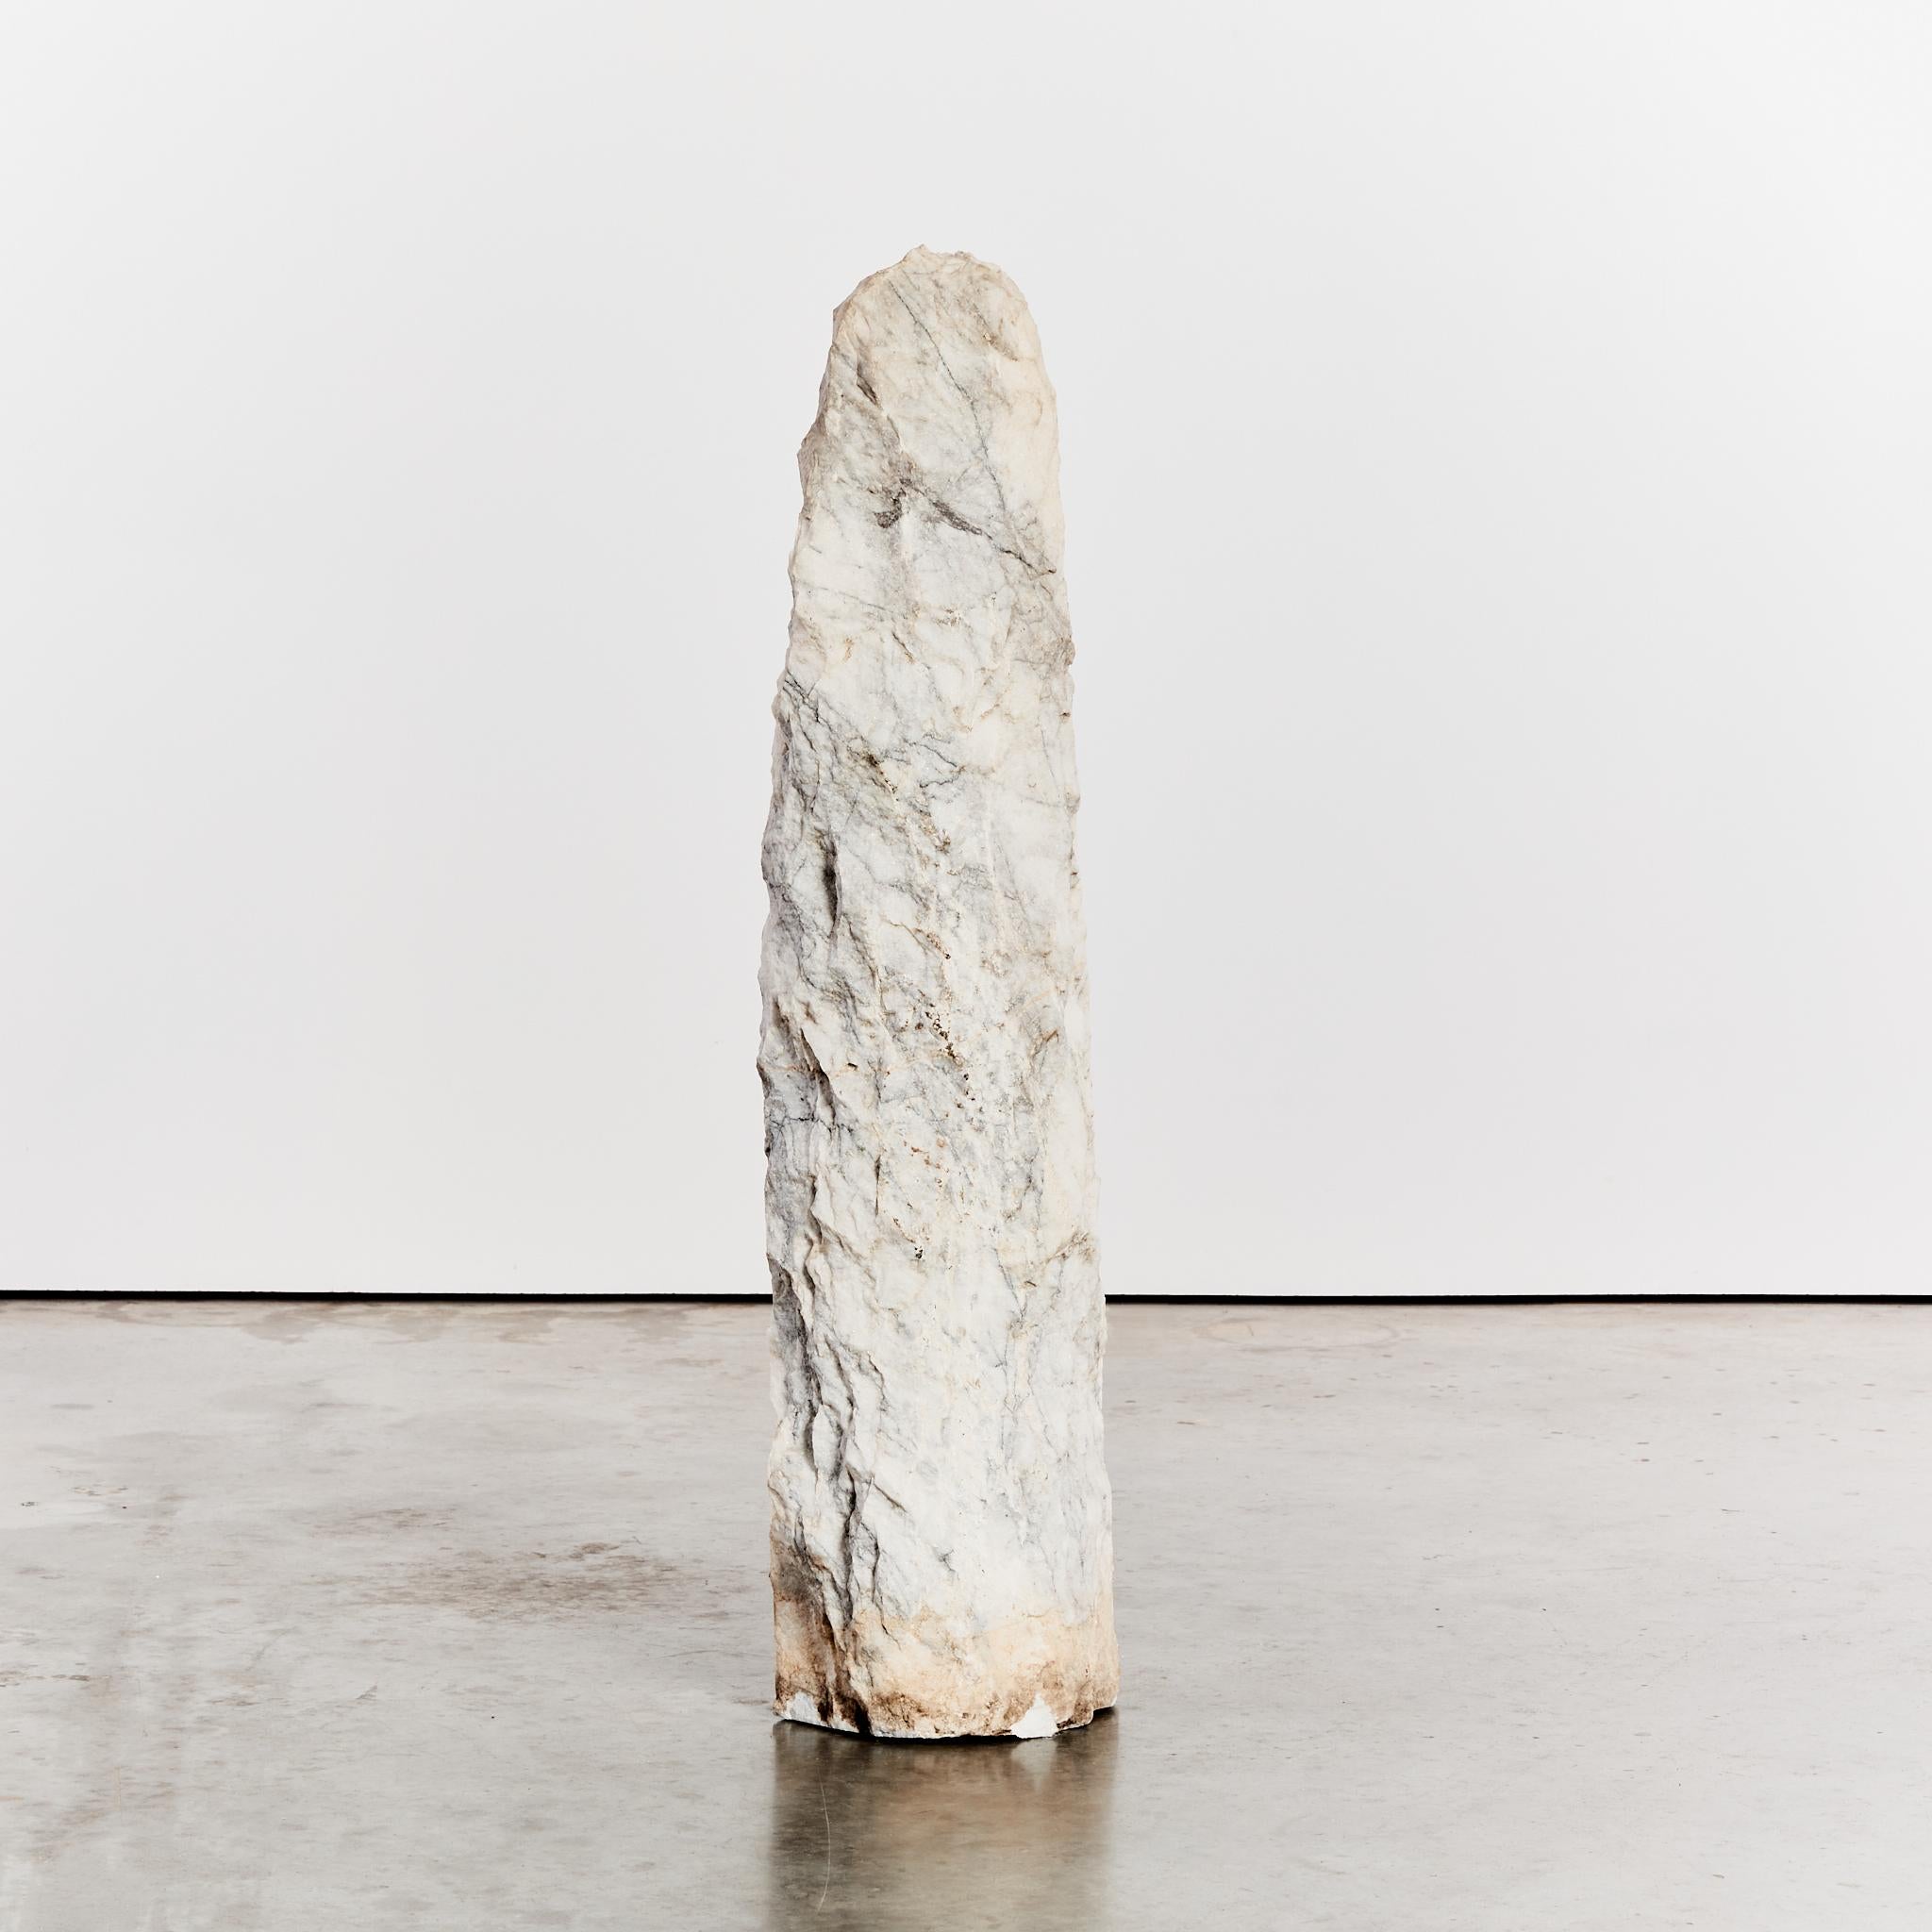 Dieser über 1 m hohe, handgeschnitzte Monolith aus Carrara-Marmor ist frei stehend und kann von allen Seiten betrachtet werden.

Künstler: Ungenanntes

Herkunft: Vereinigtes Königreich

Zeitraum: 1980's

Abmessungen: H120 x B28 x T24cm 

Zustand: